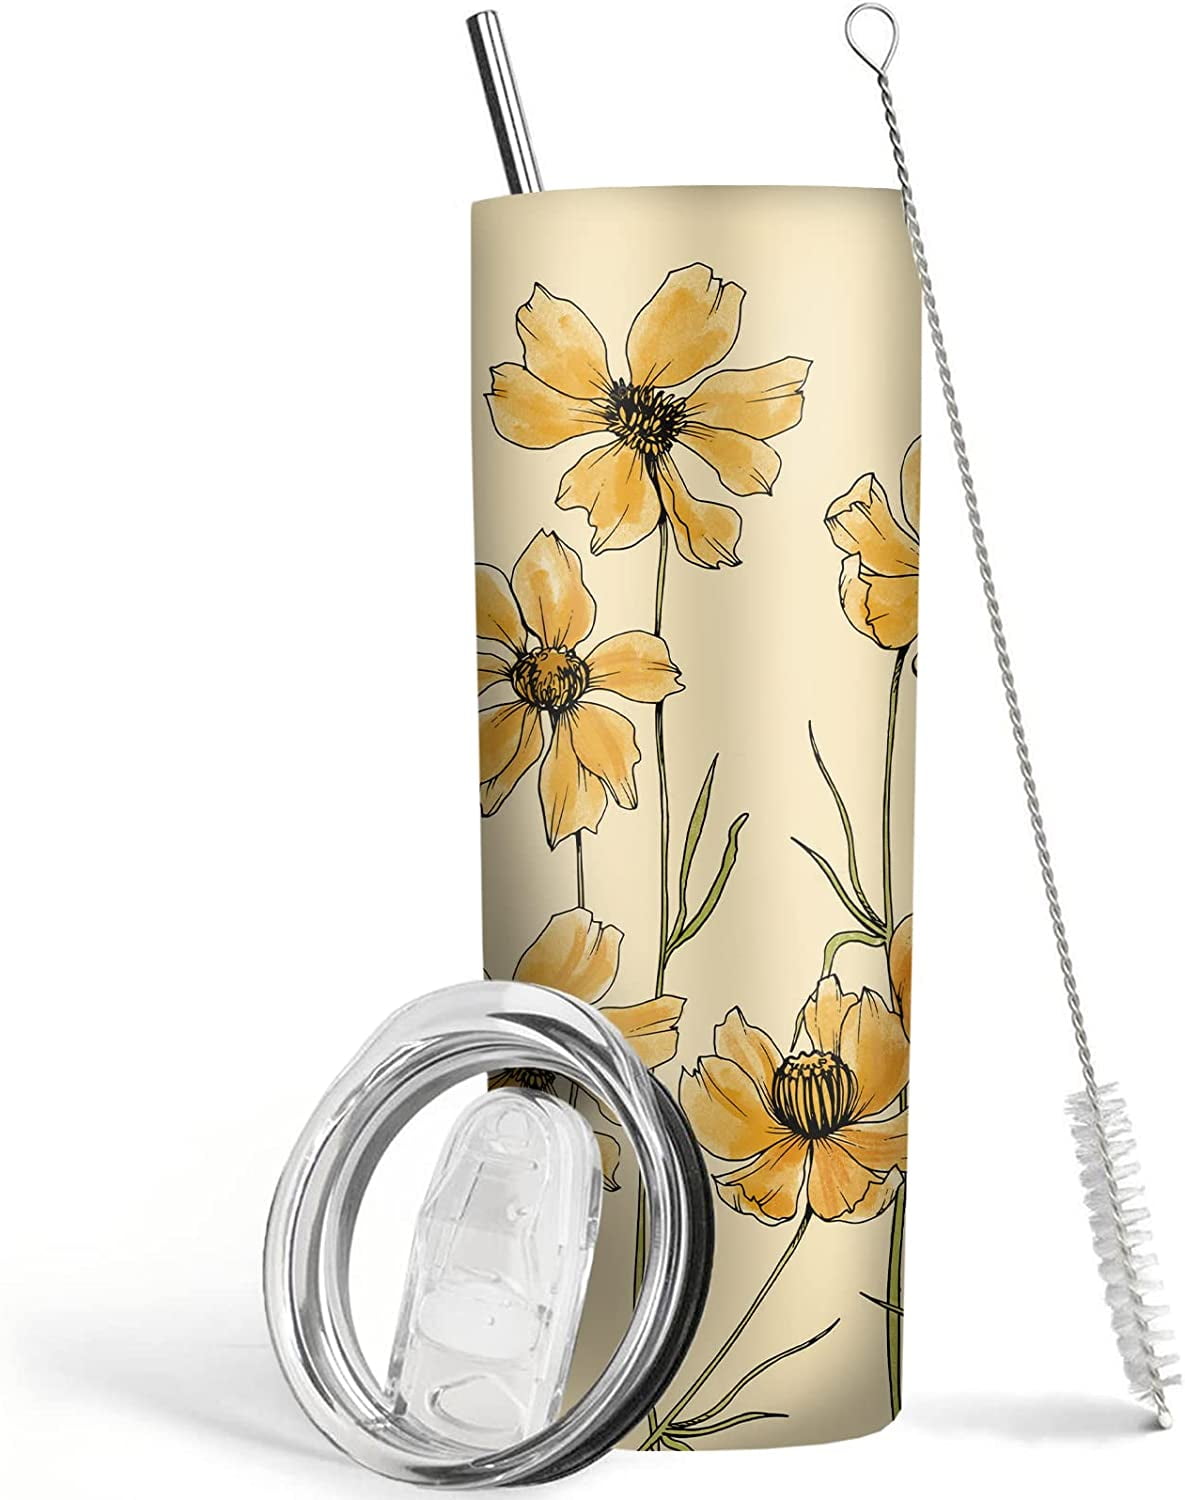 16 oz Glass Tumbler, metal straw in flowers, daisy, wildflower print